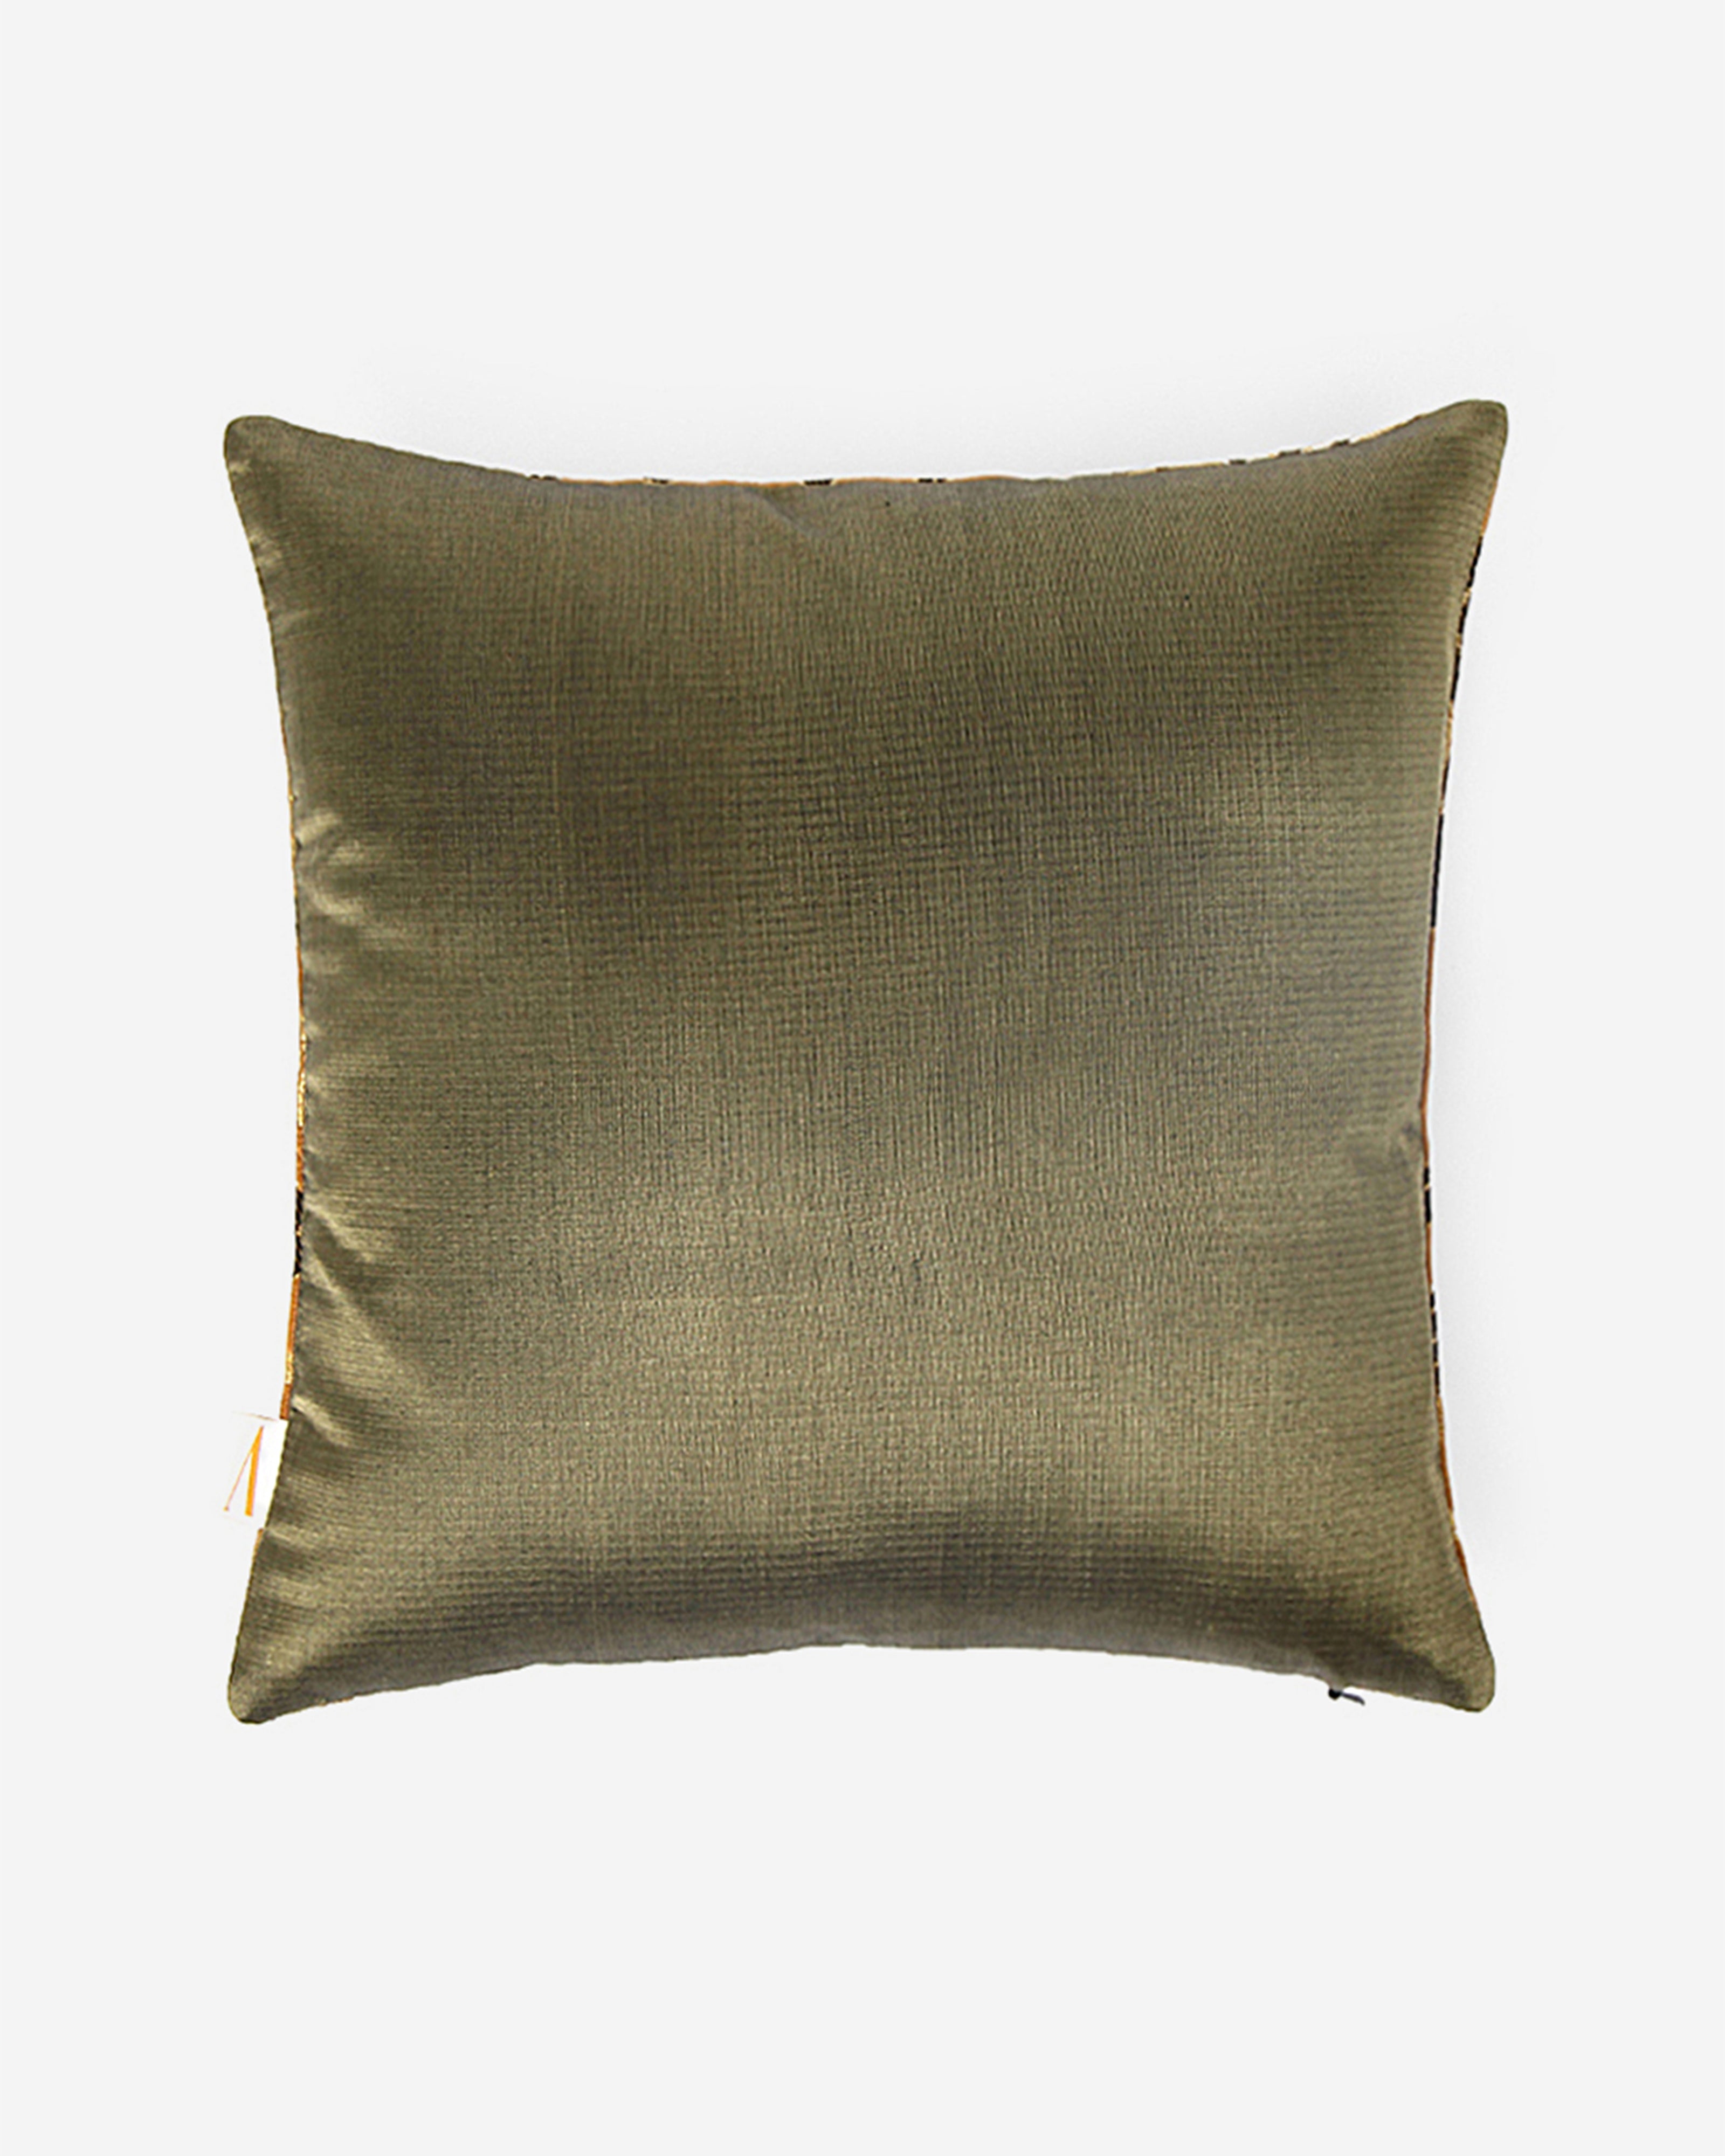 Fire Satin Brocade Silk Cushion Cover